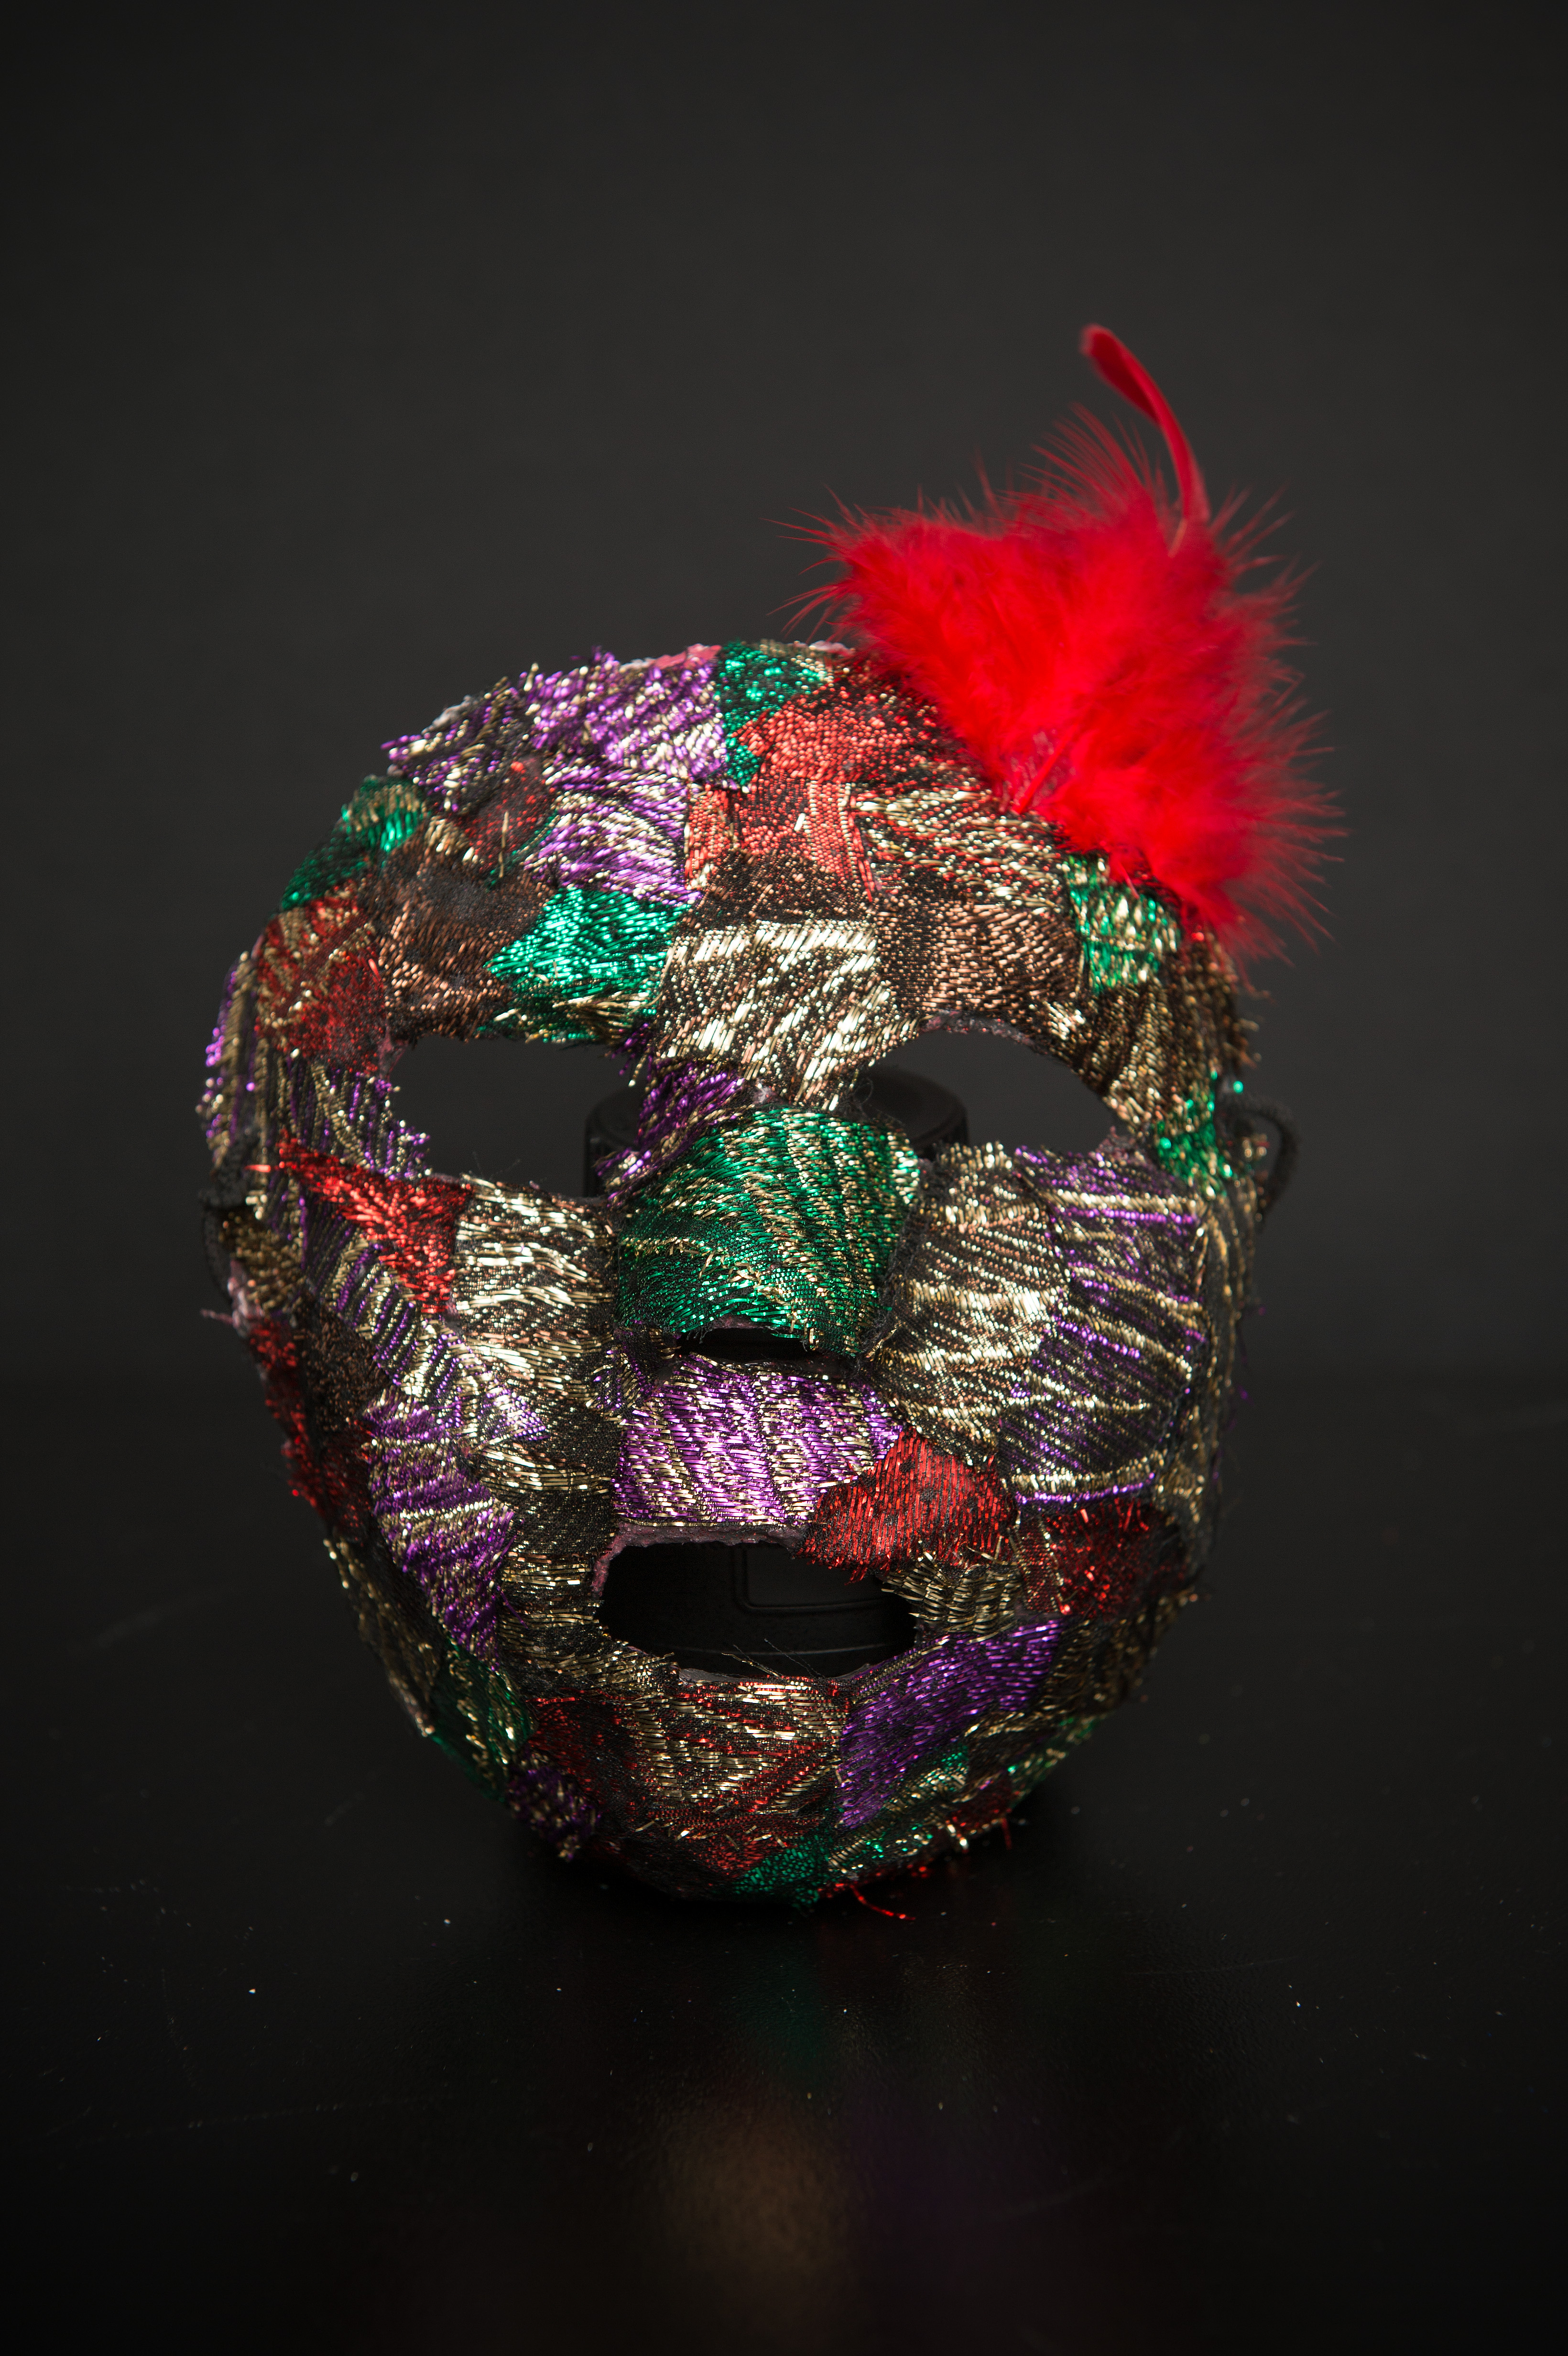 Maska teatralna, bardzo kolorowa, z doczepionym u góry czerwonym piórem.